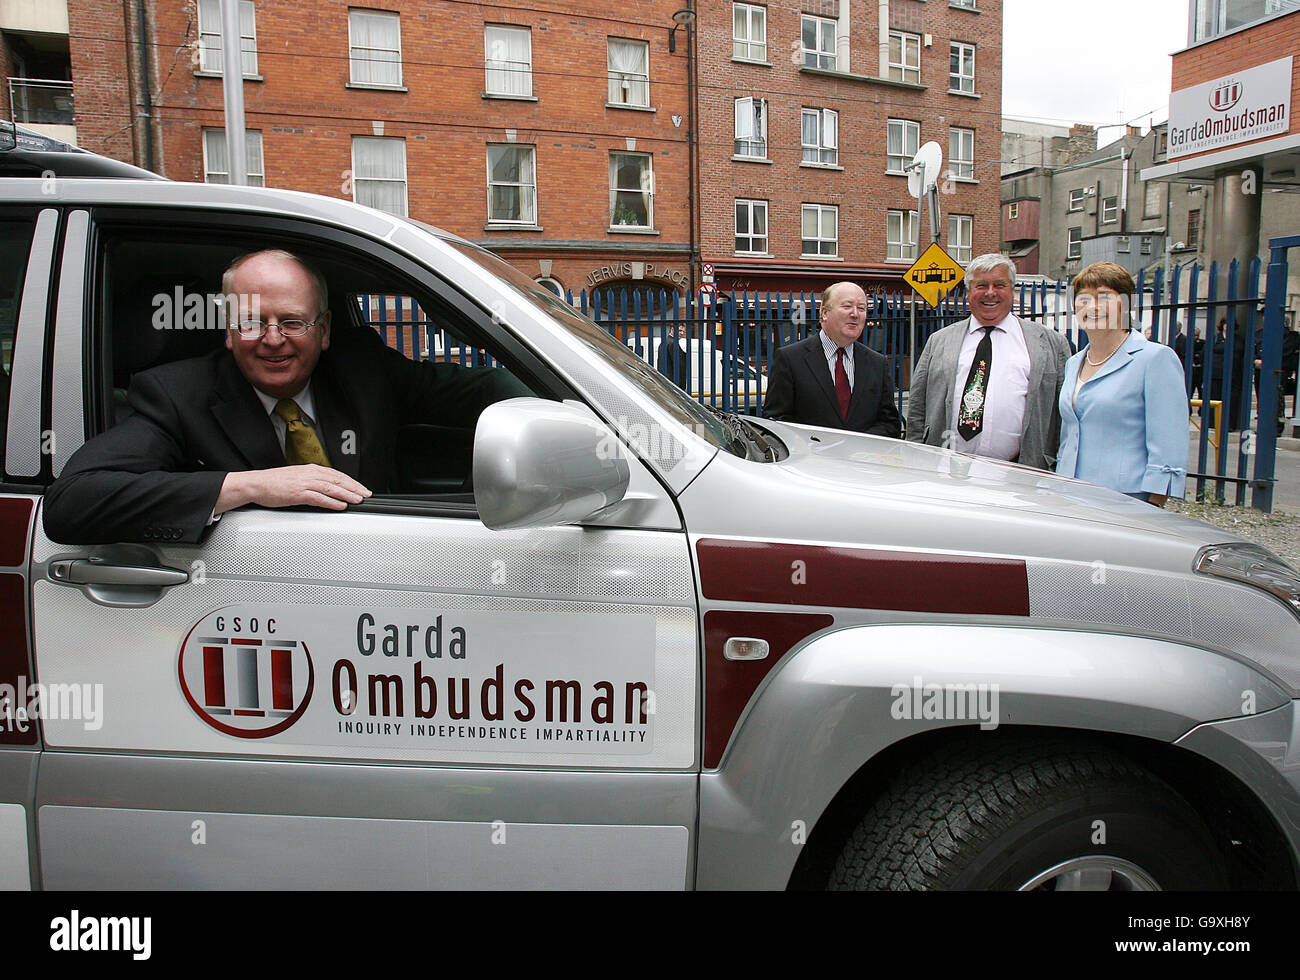 Tainaiste et ministre de la Justice Michael McDowell TD photographié dans l'un des véhicules d'enquête lors de l'ouverture officielle de la Commission d'Ombudsman de Garda Siochana à Dublin. Banque D'Images